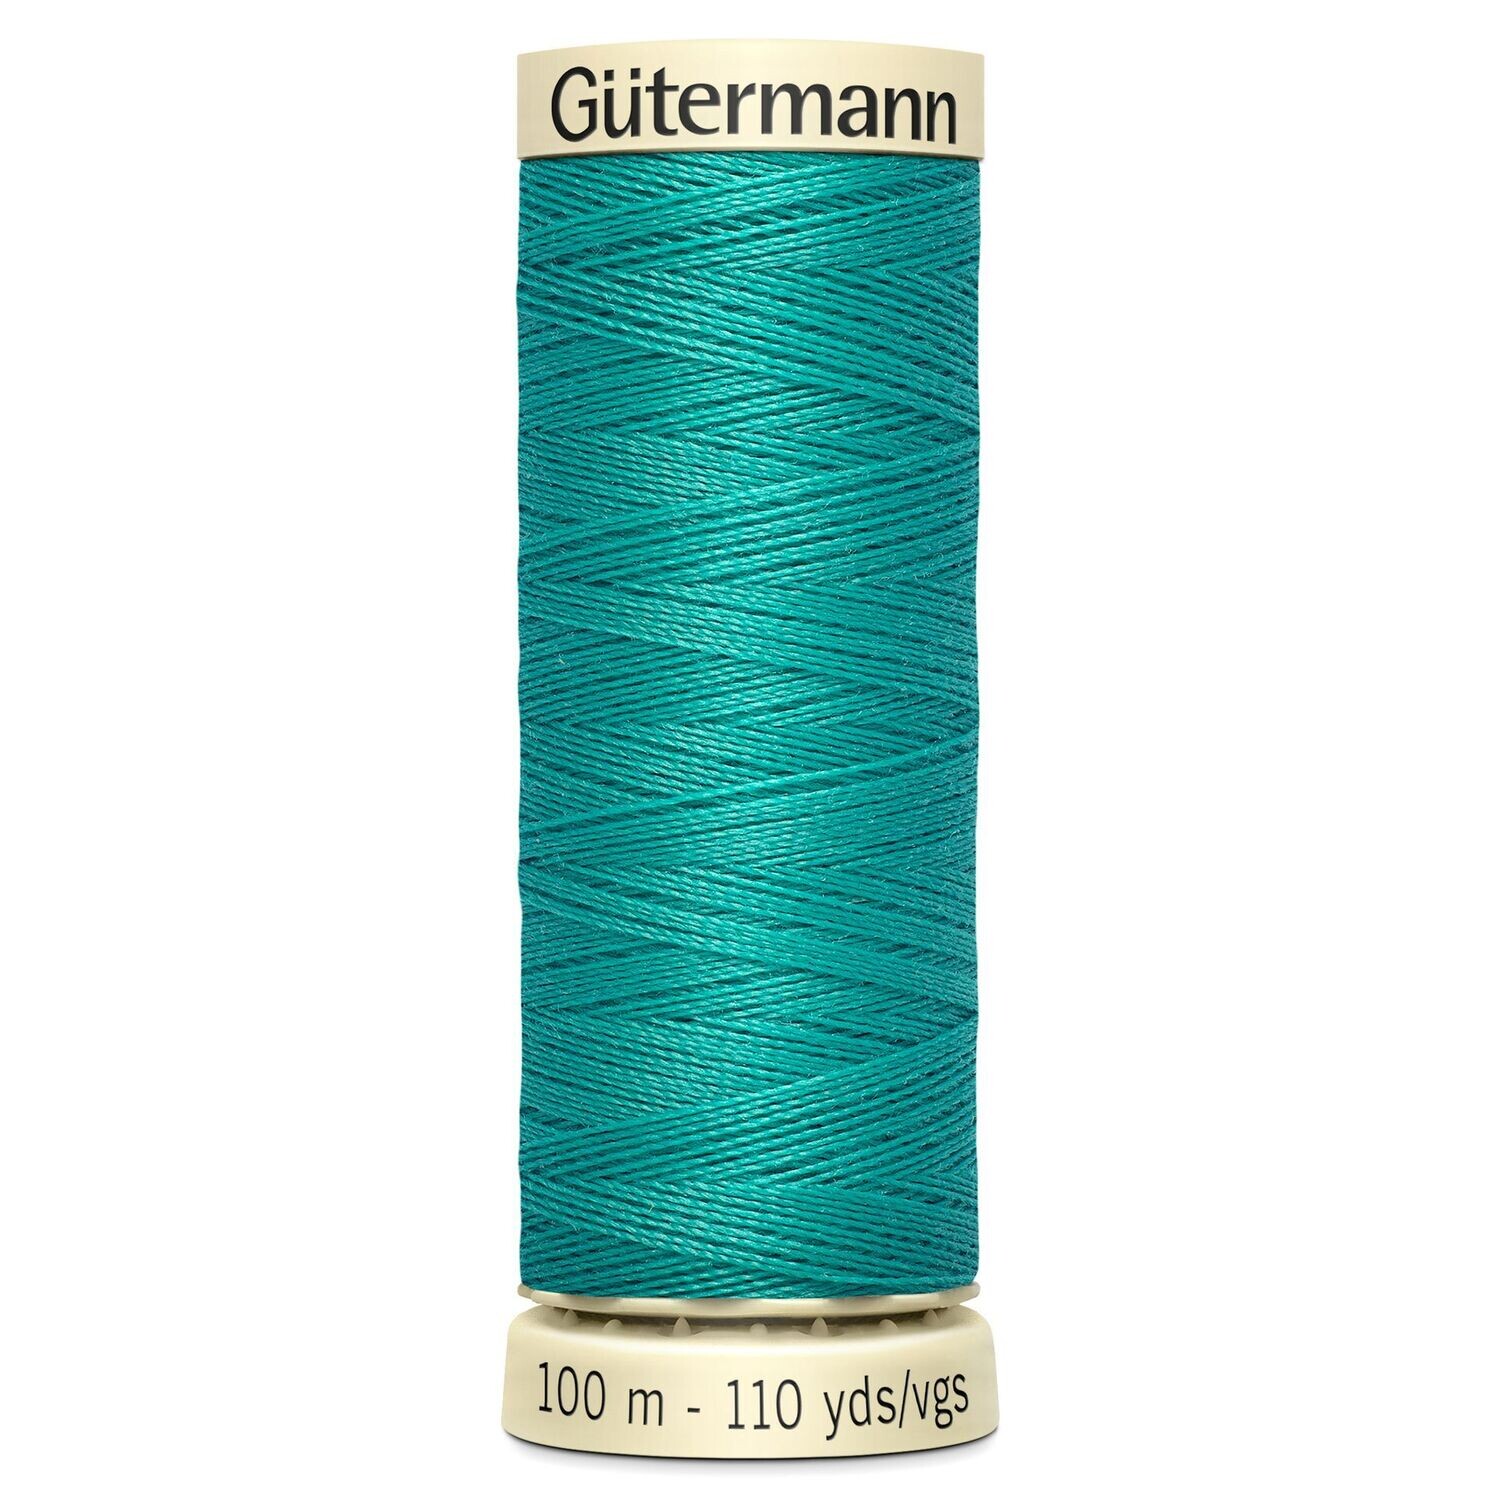 Sew All Thread 100m - Gutermann - Colour 235